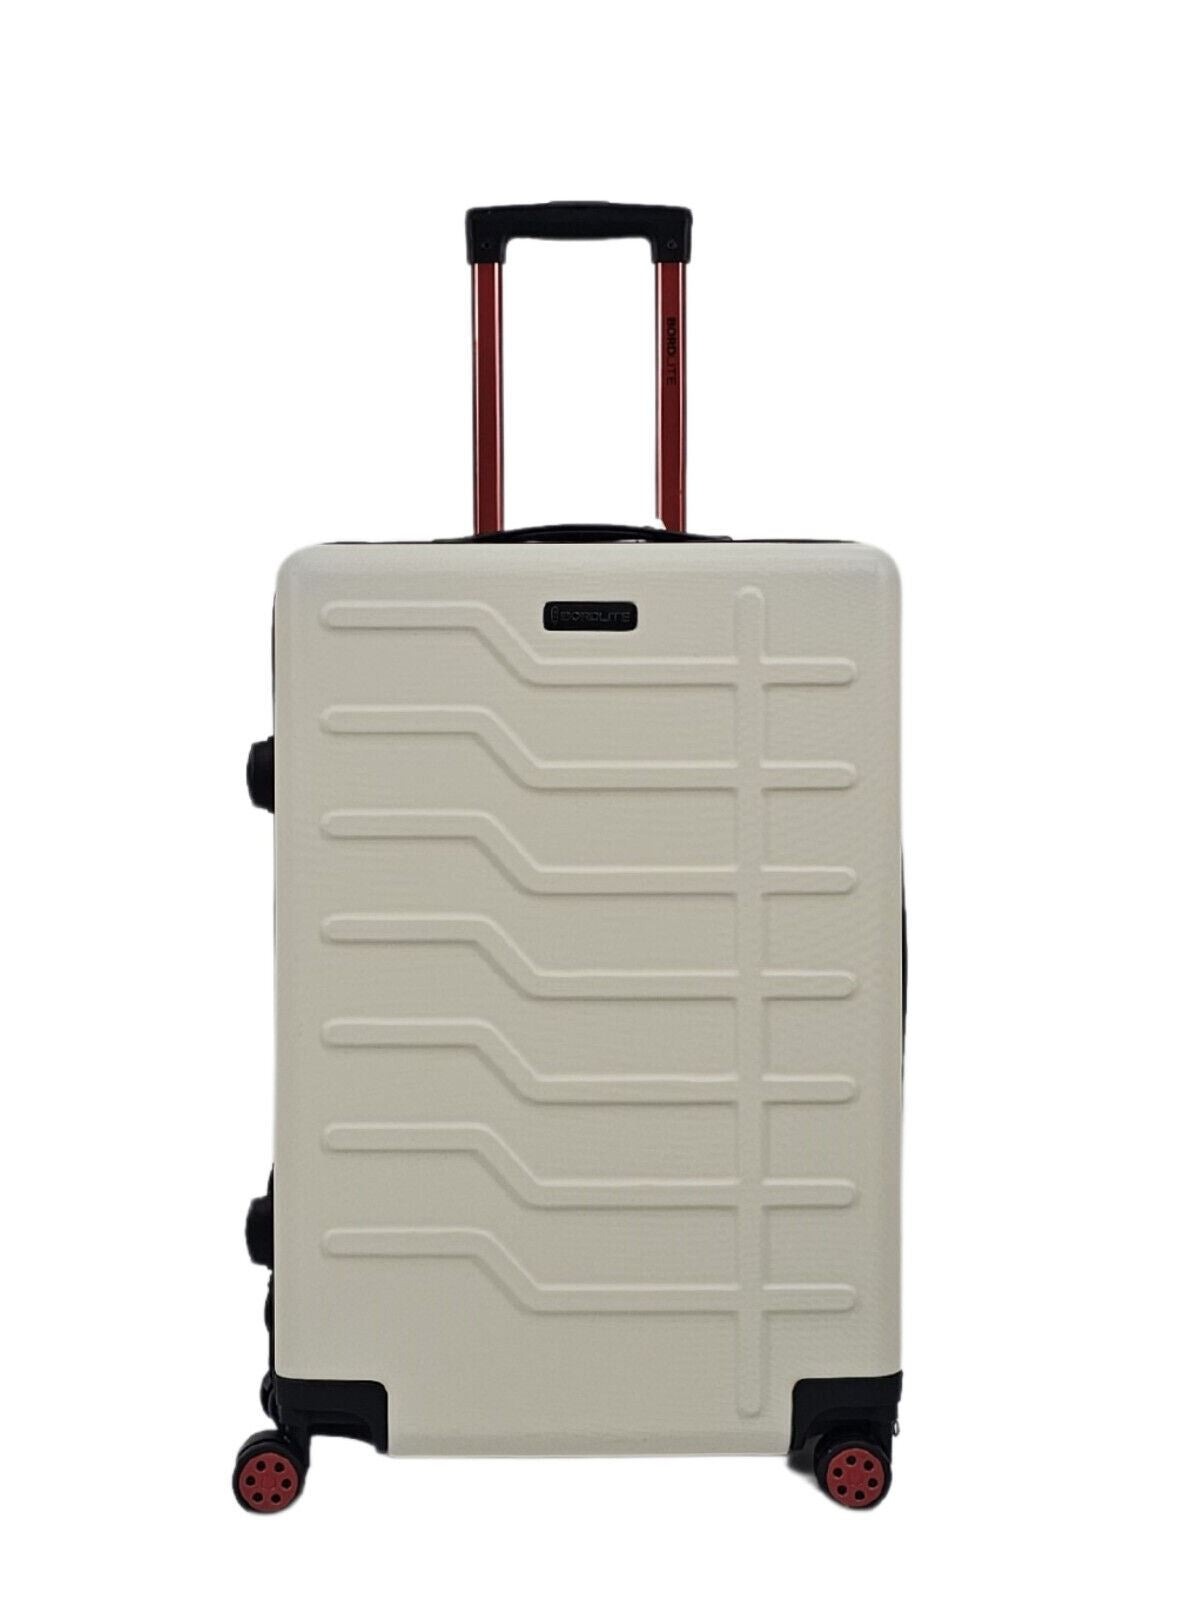 White Hard Shell Classic Suitcase Set 8 Wheel Cabin Luggage Case Holiday Travel